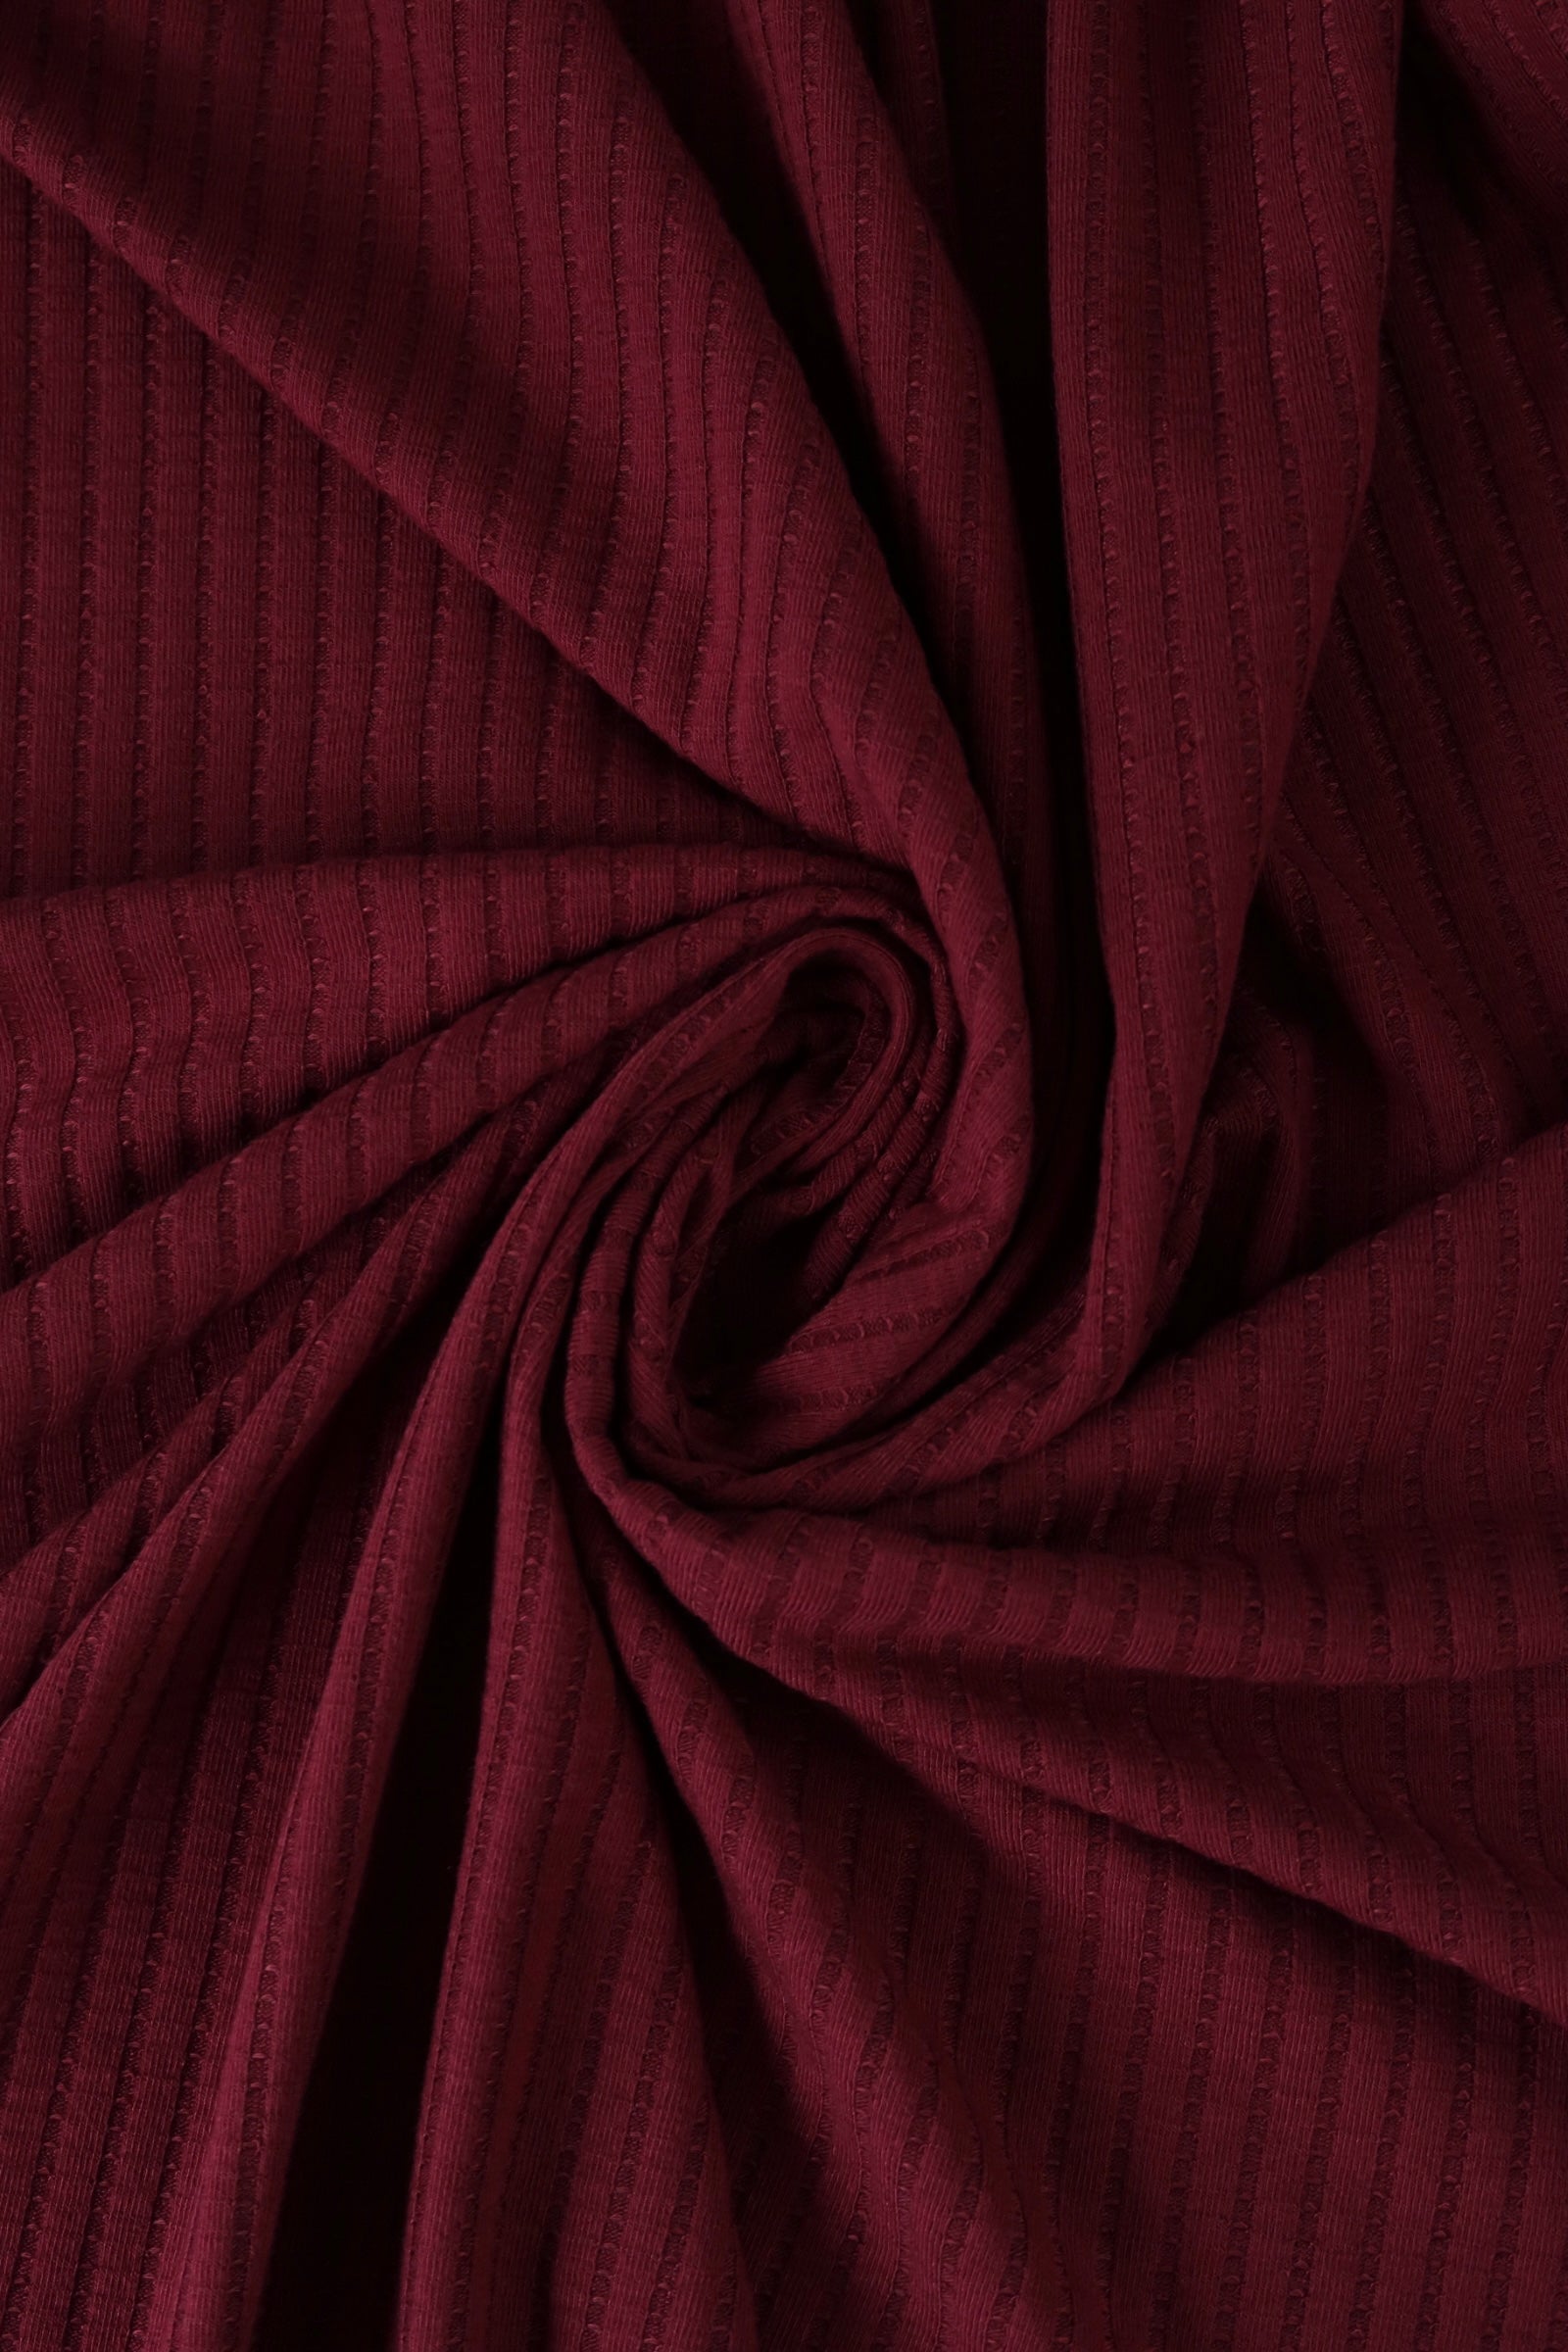 Rib Knit Rust Wholsale Fabric